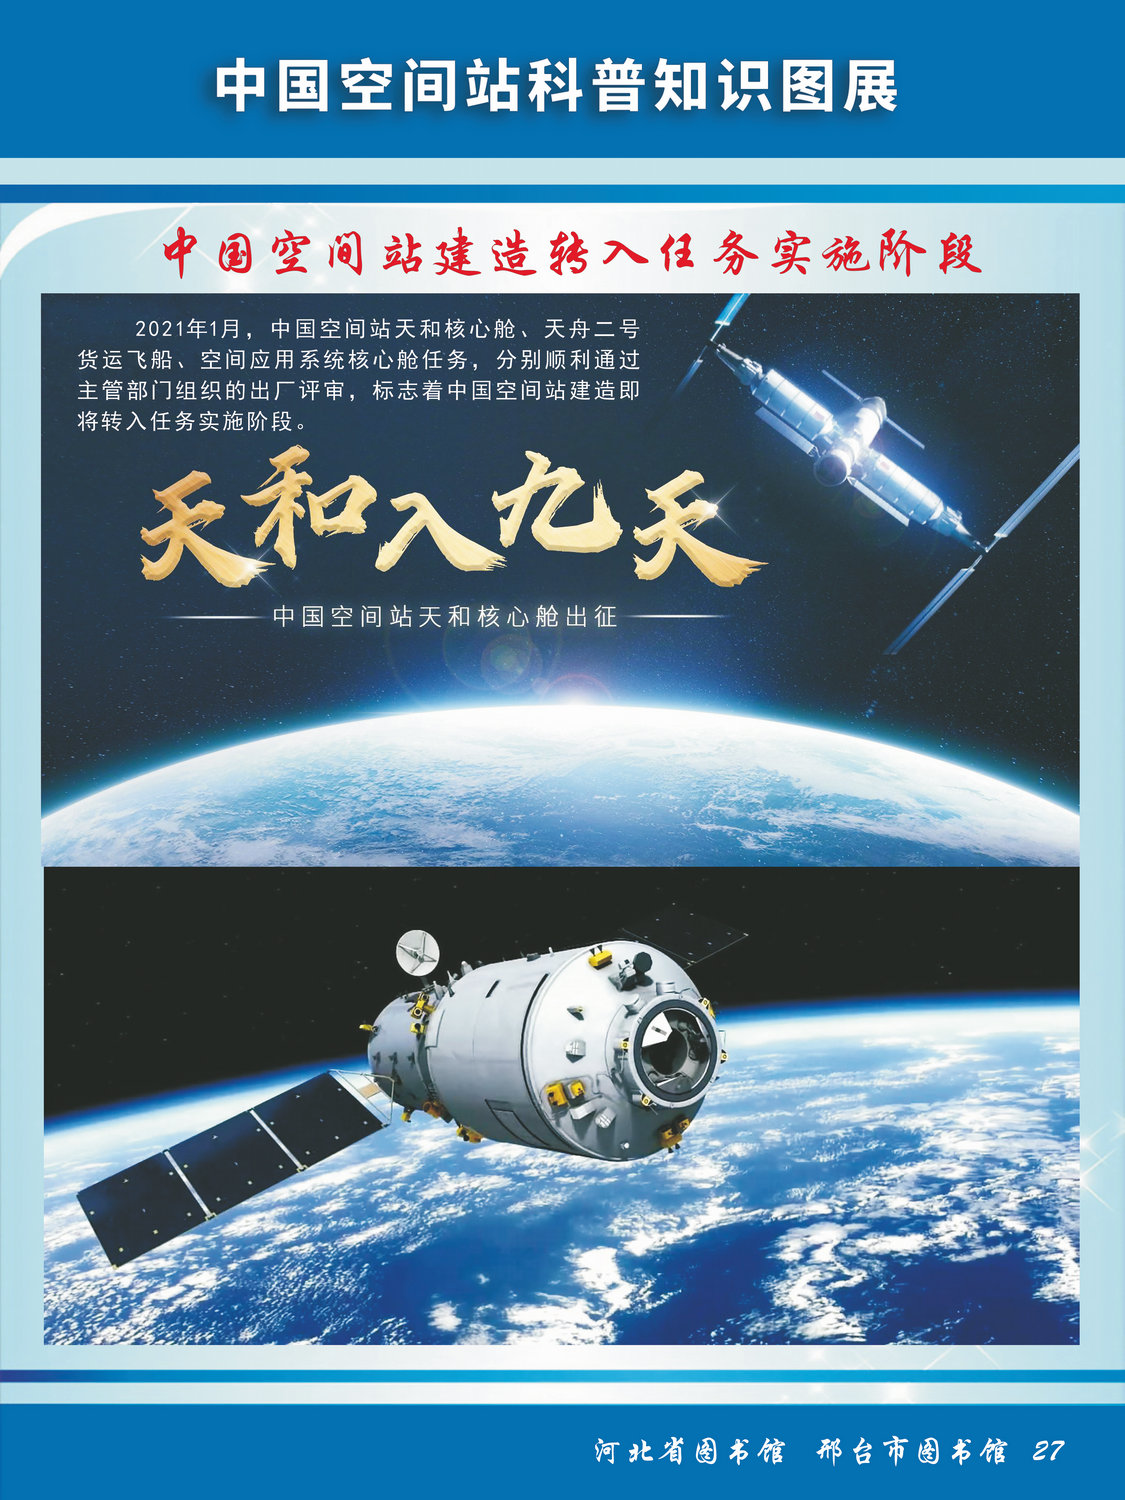 中国空间站科普知识图文展_图27